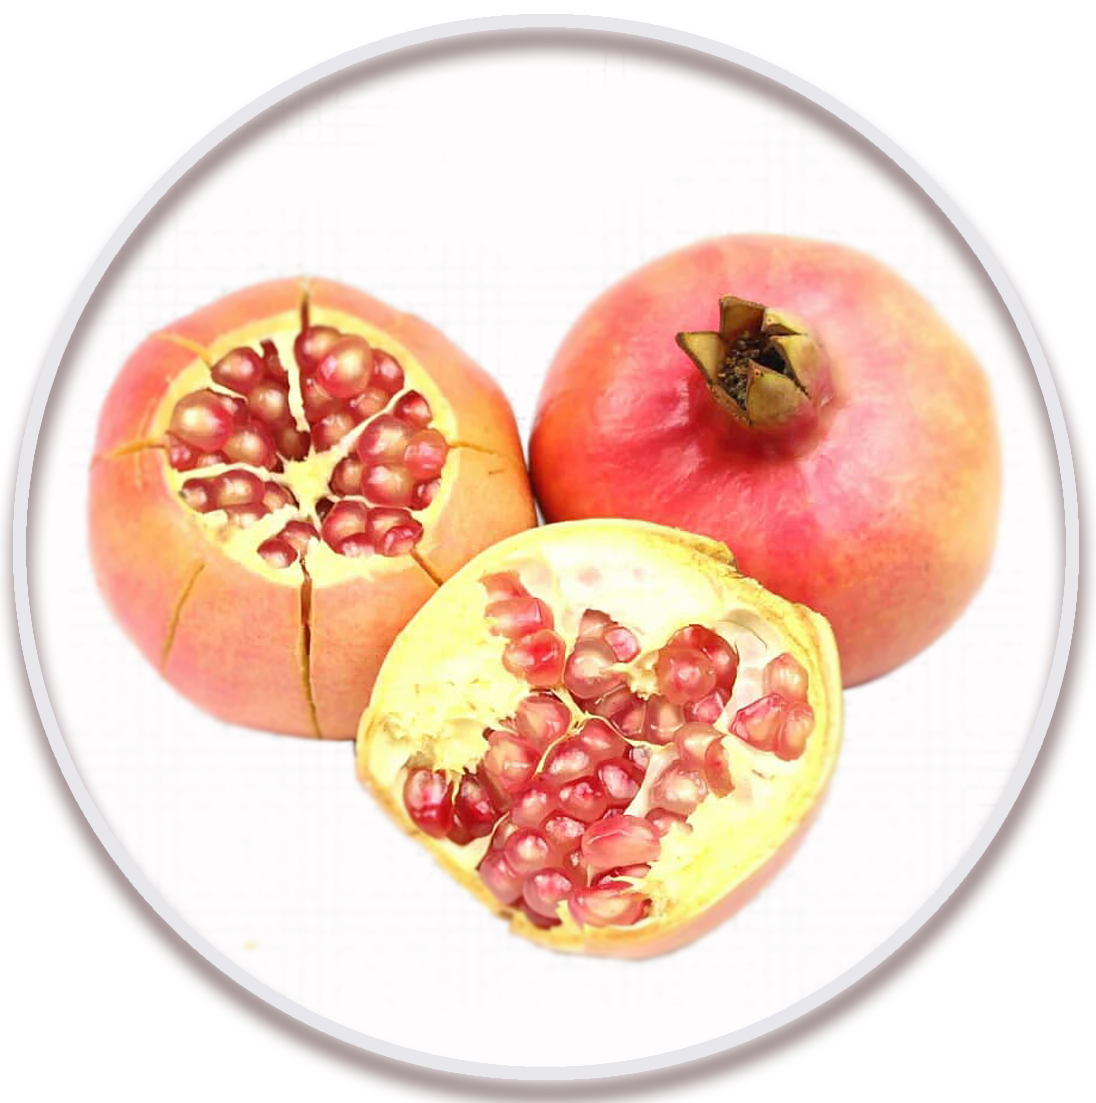 انار شیرین بهشهر (Pomegranate)